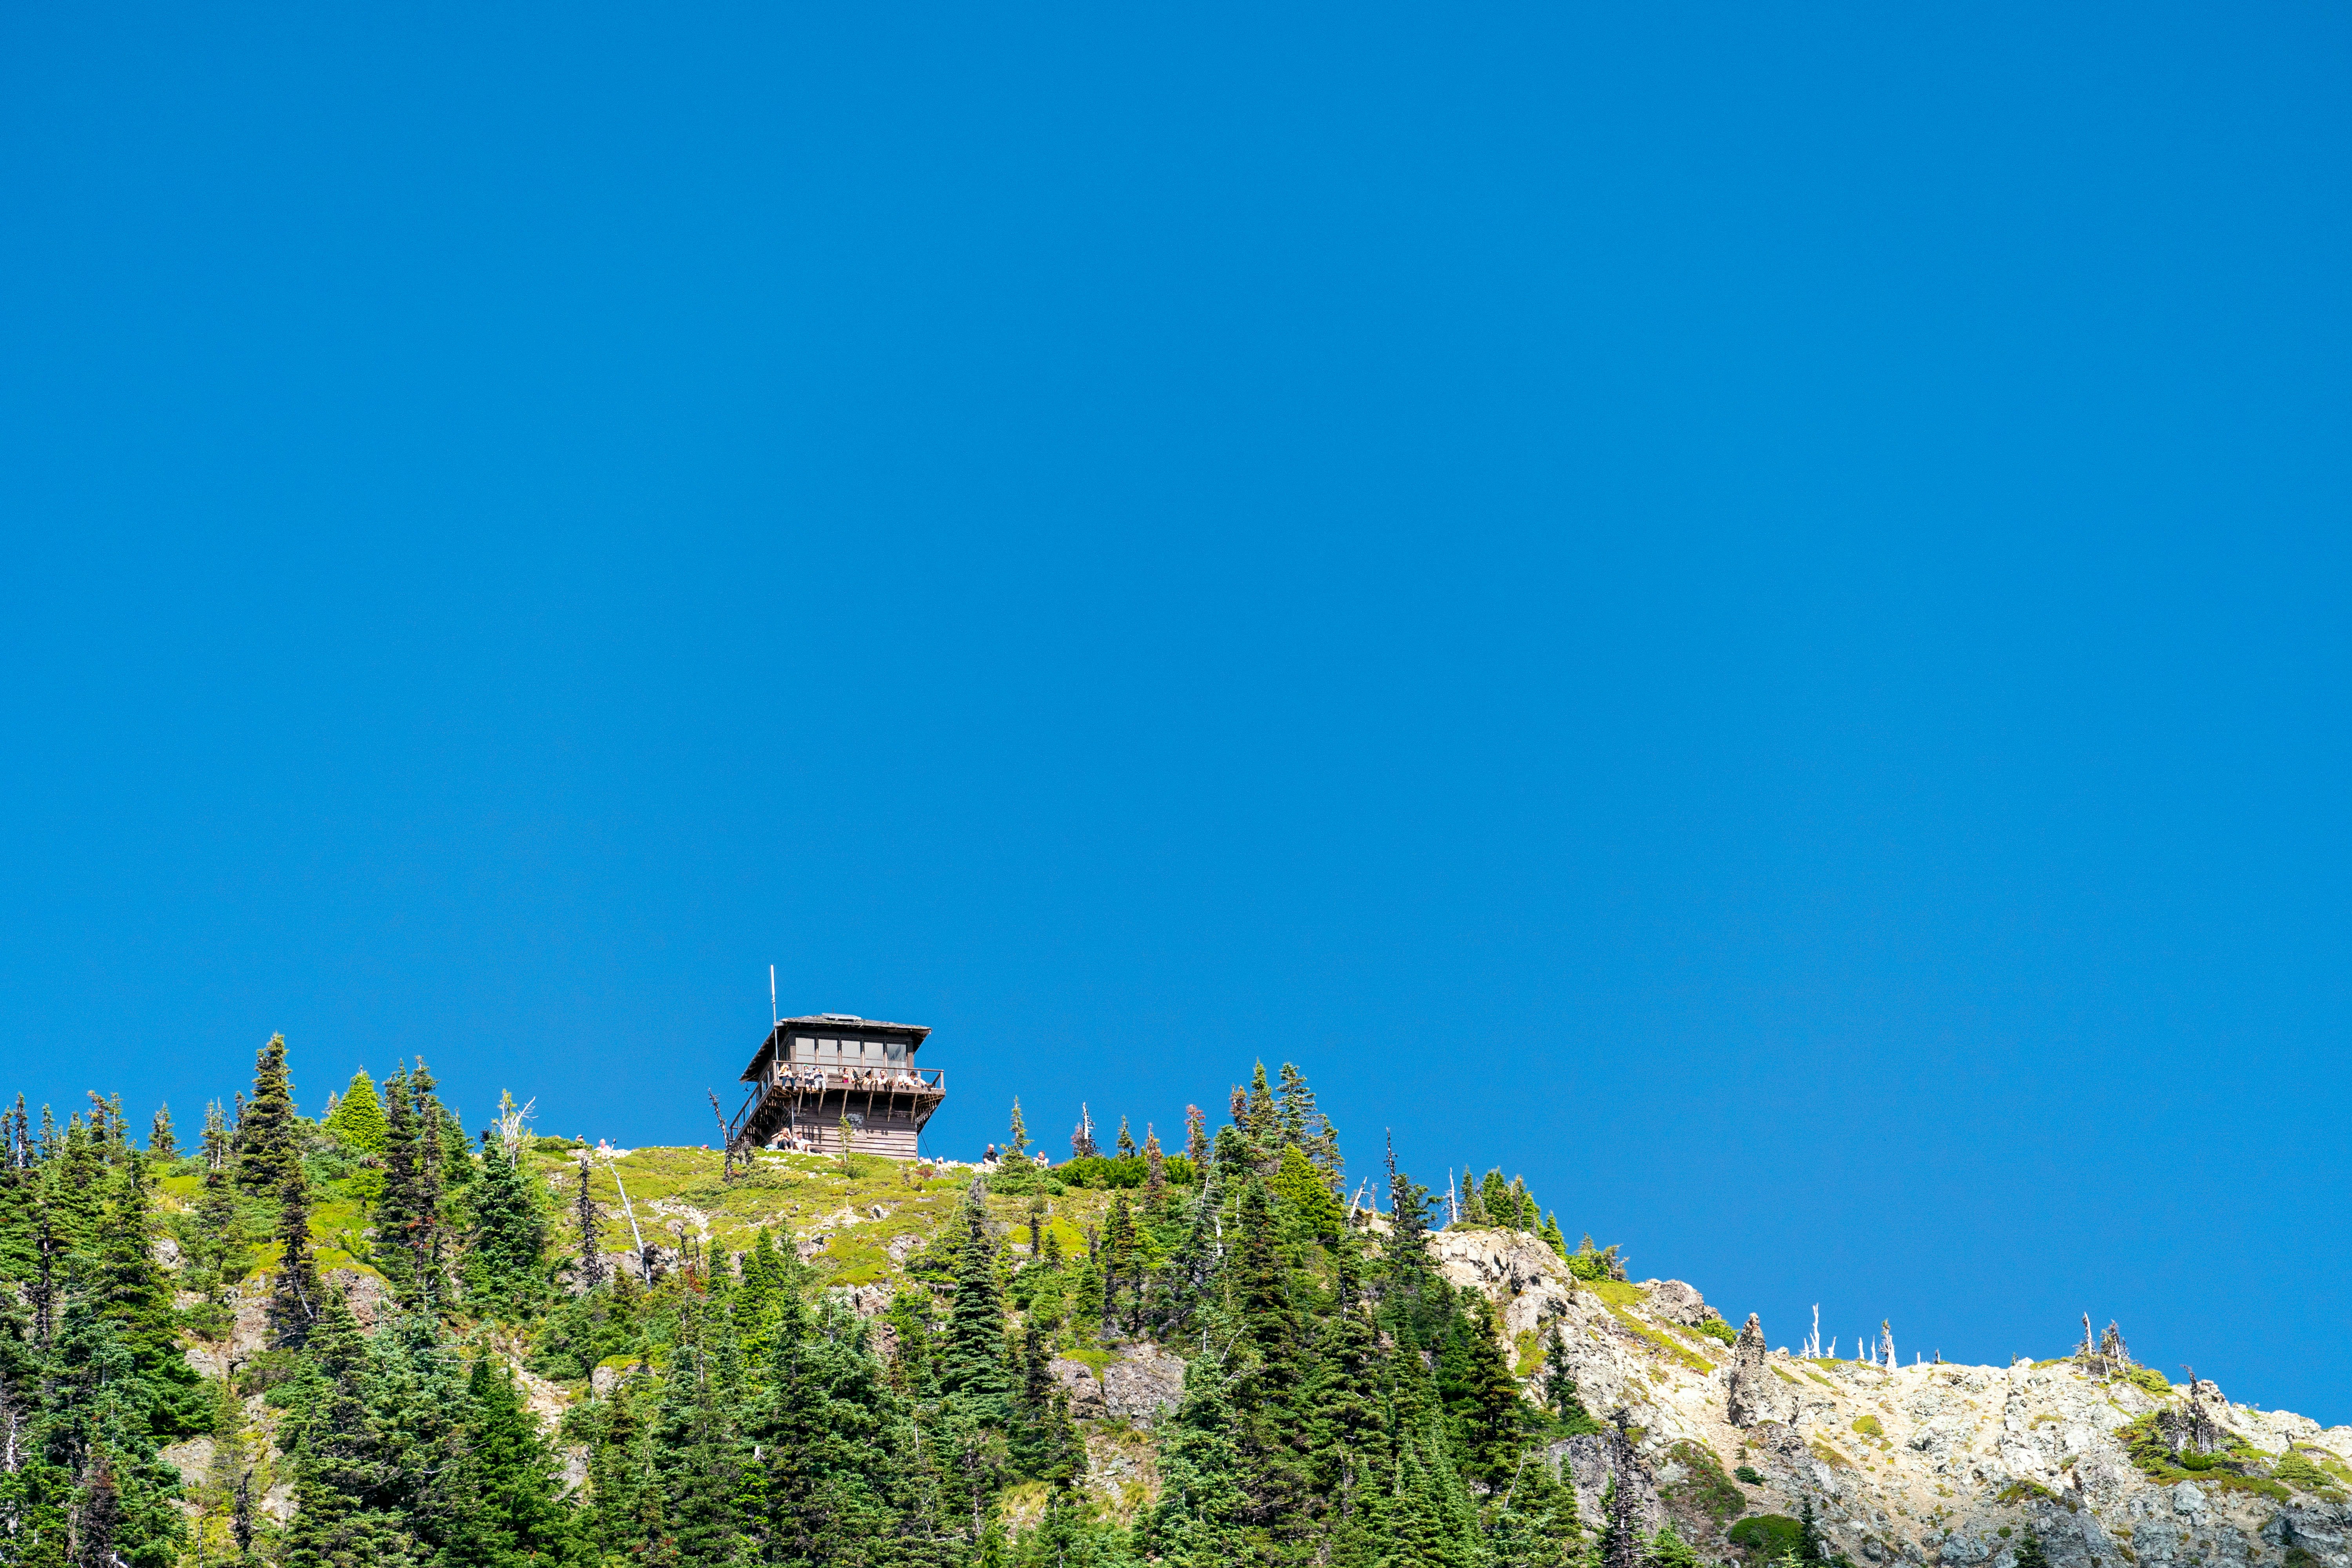 Tolmie Peak lookout tower